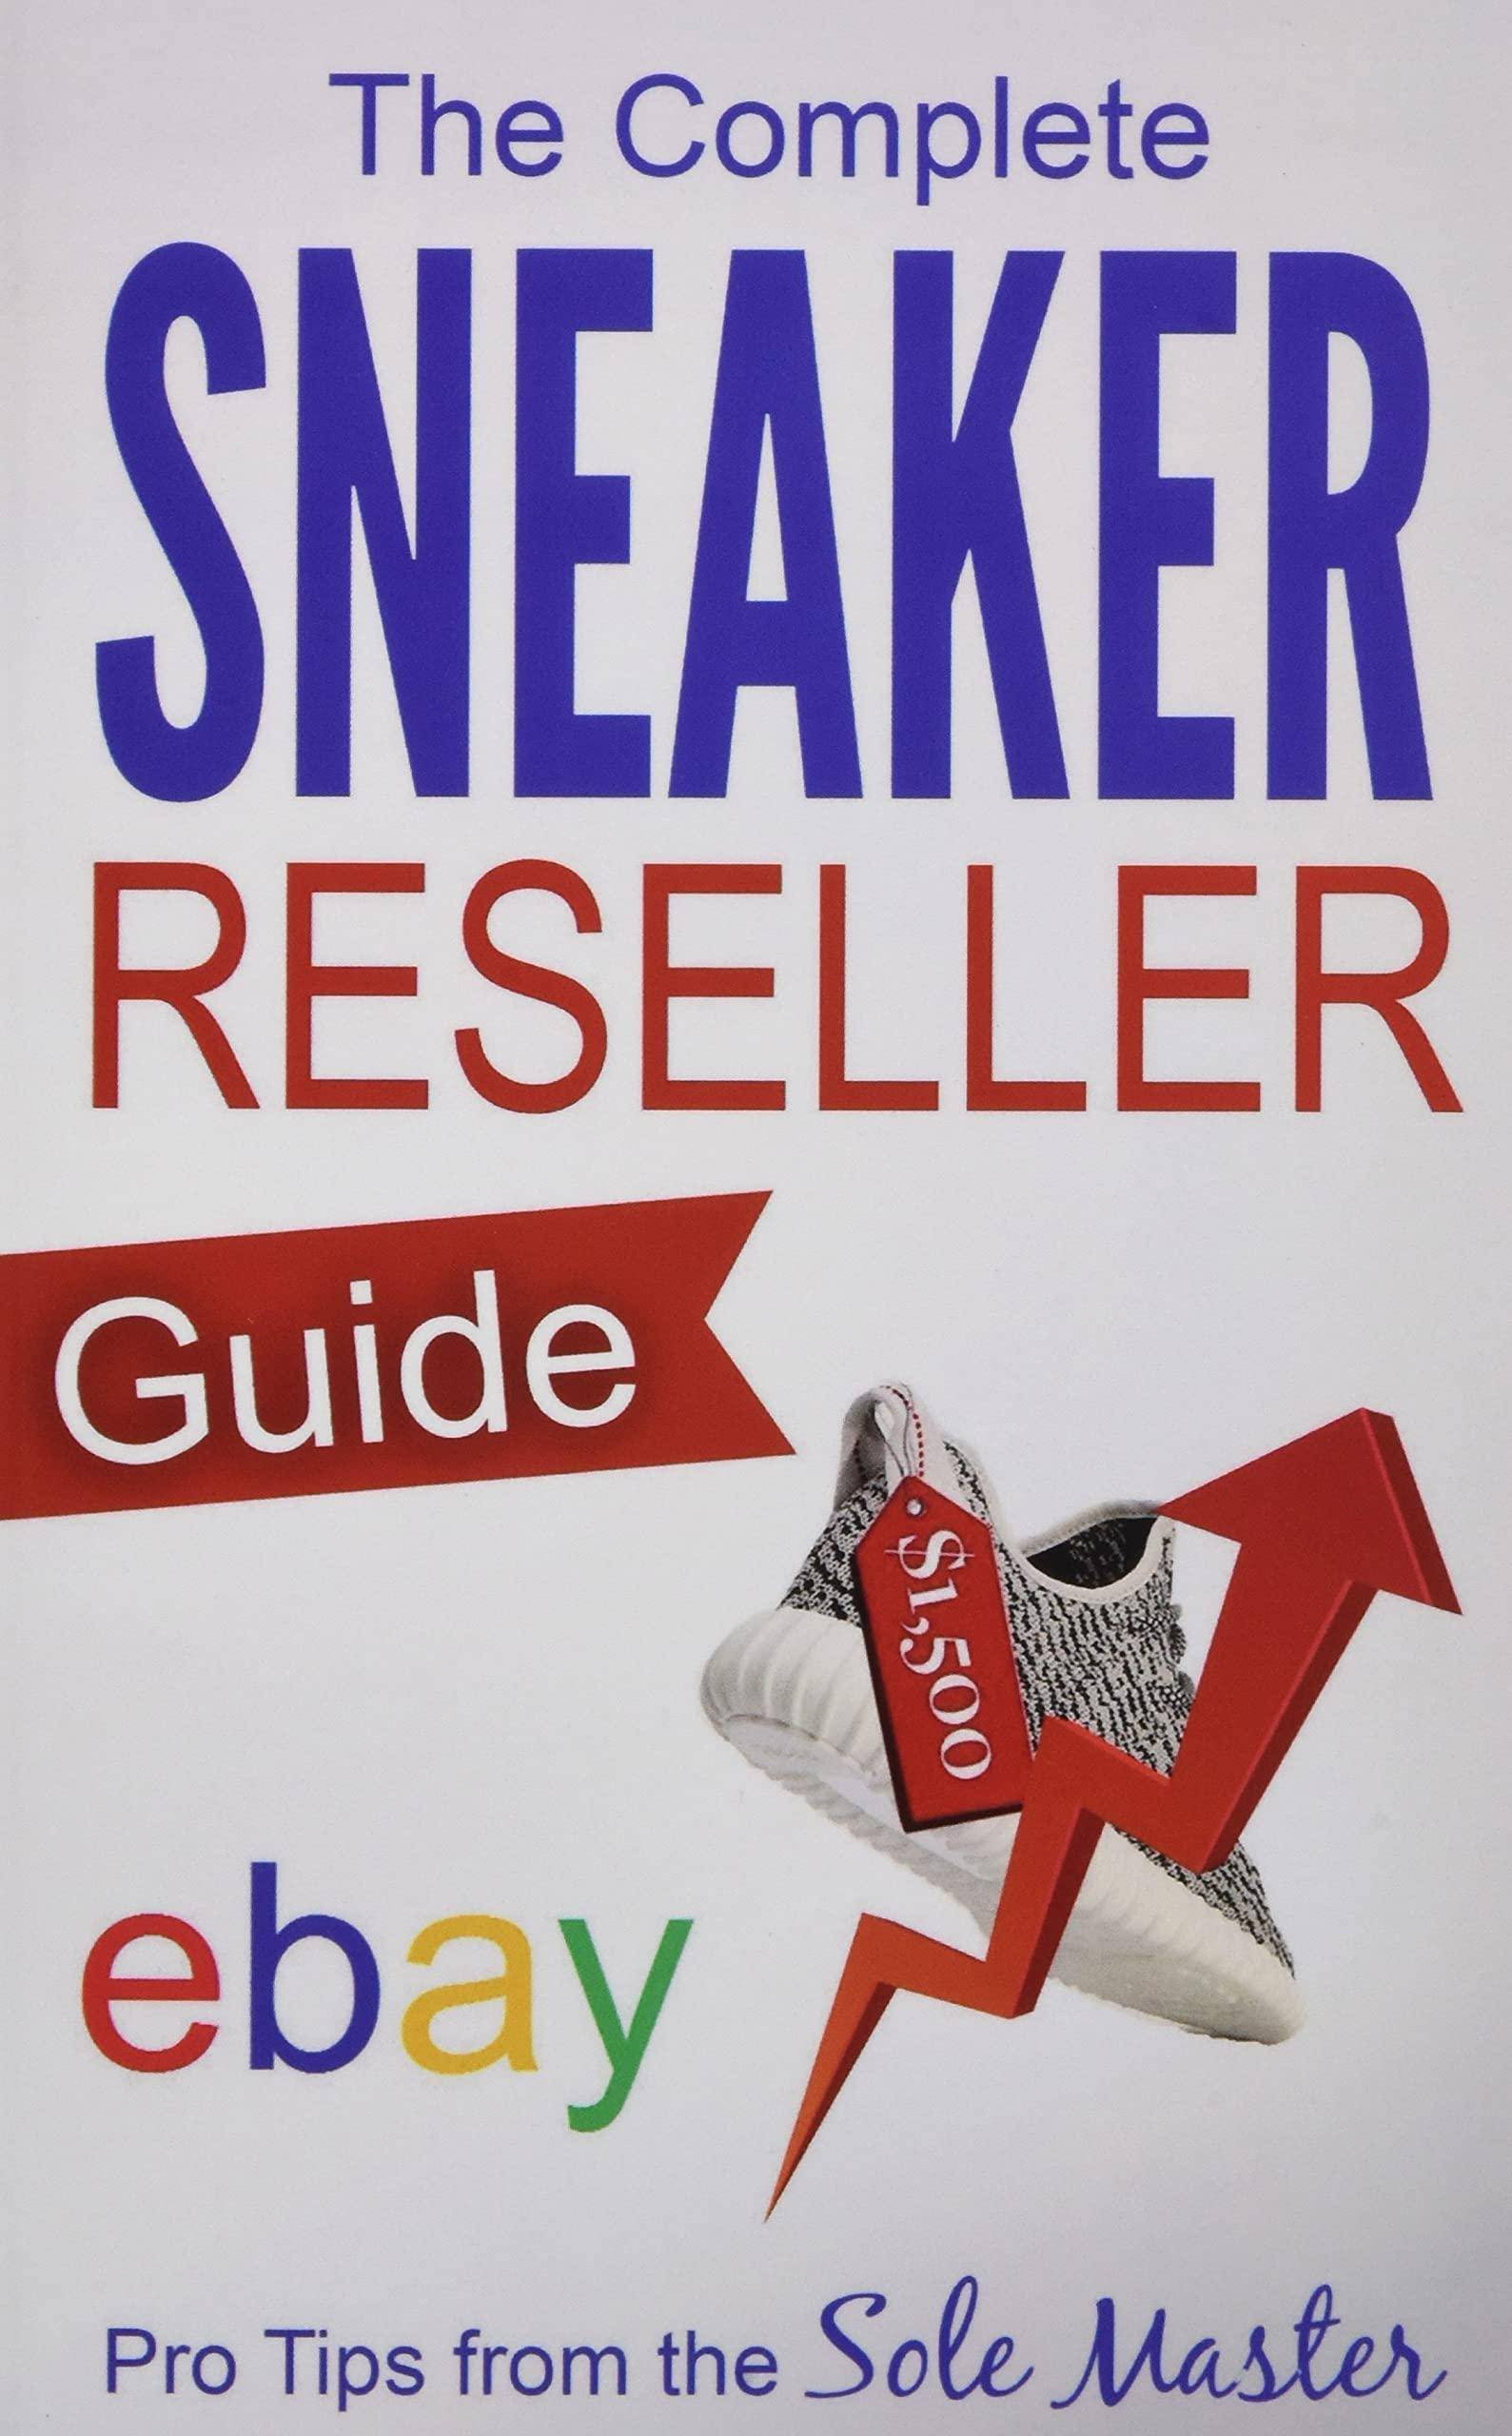 Complete Sneaker Reseller Guide - SureShot Books Publishing LLC